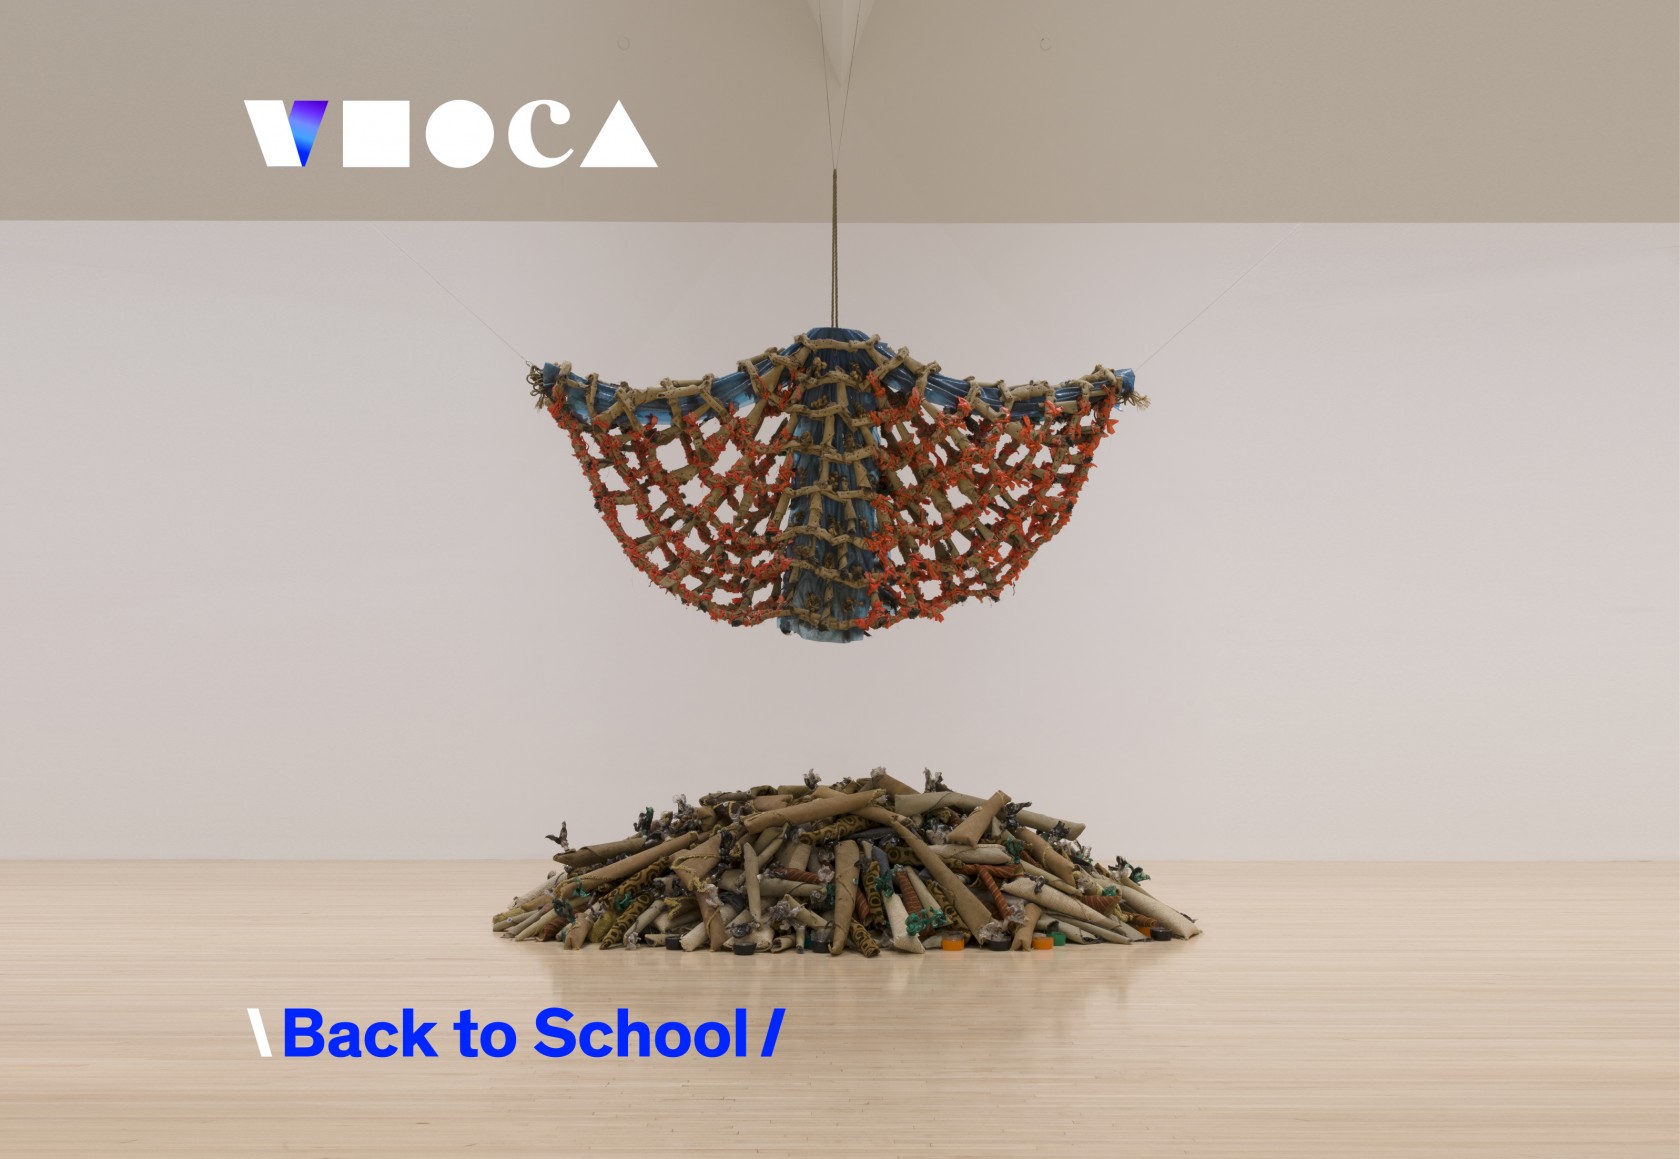 Virtual MOCA: Back to School